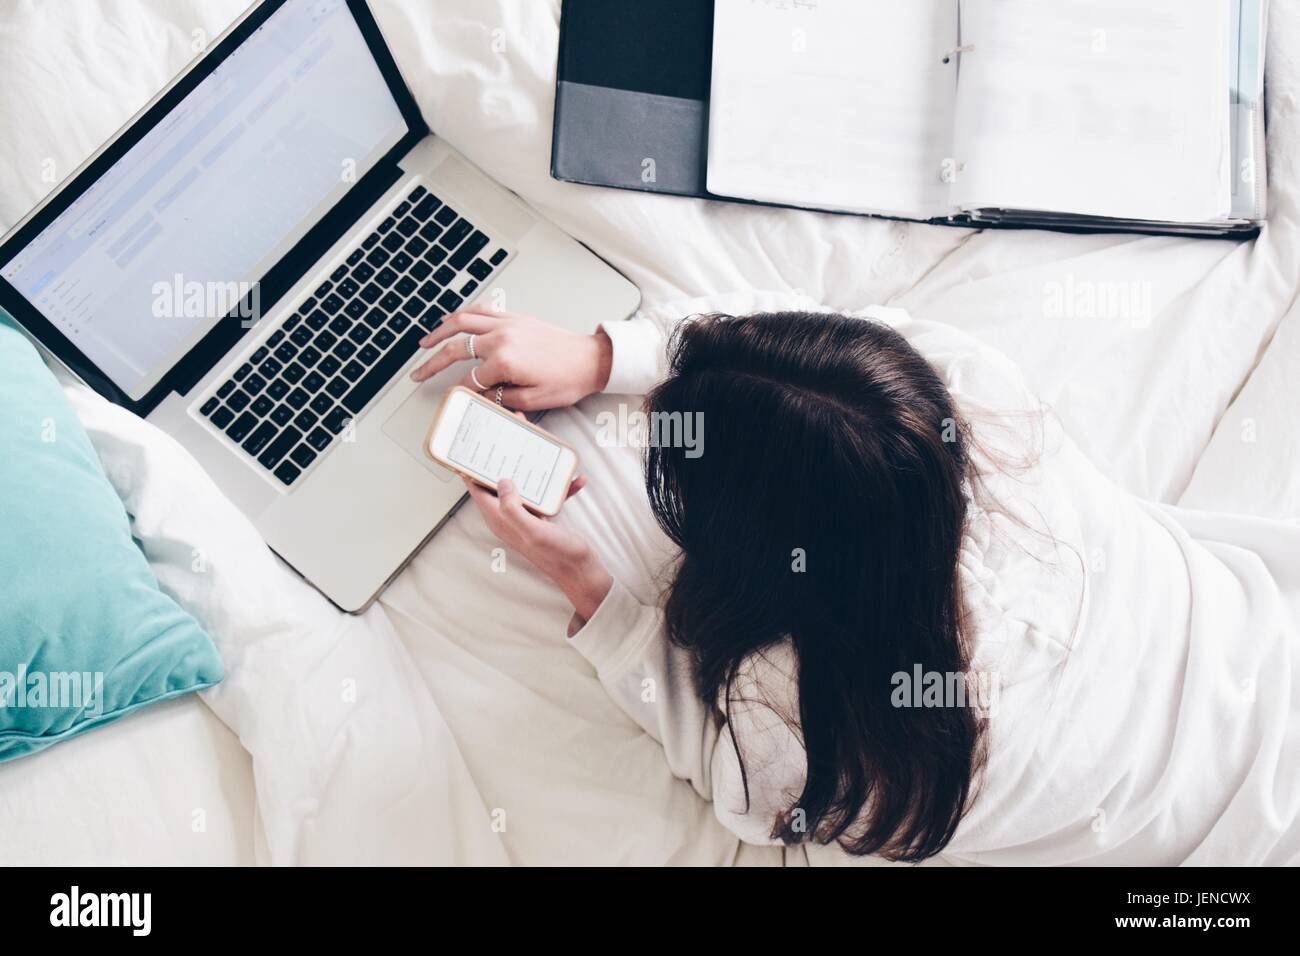 Adolescente acostado en la cama con su ordenador portátil y teléfono móvil Foto de stock